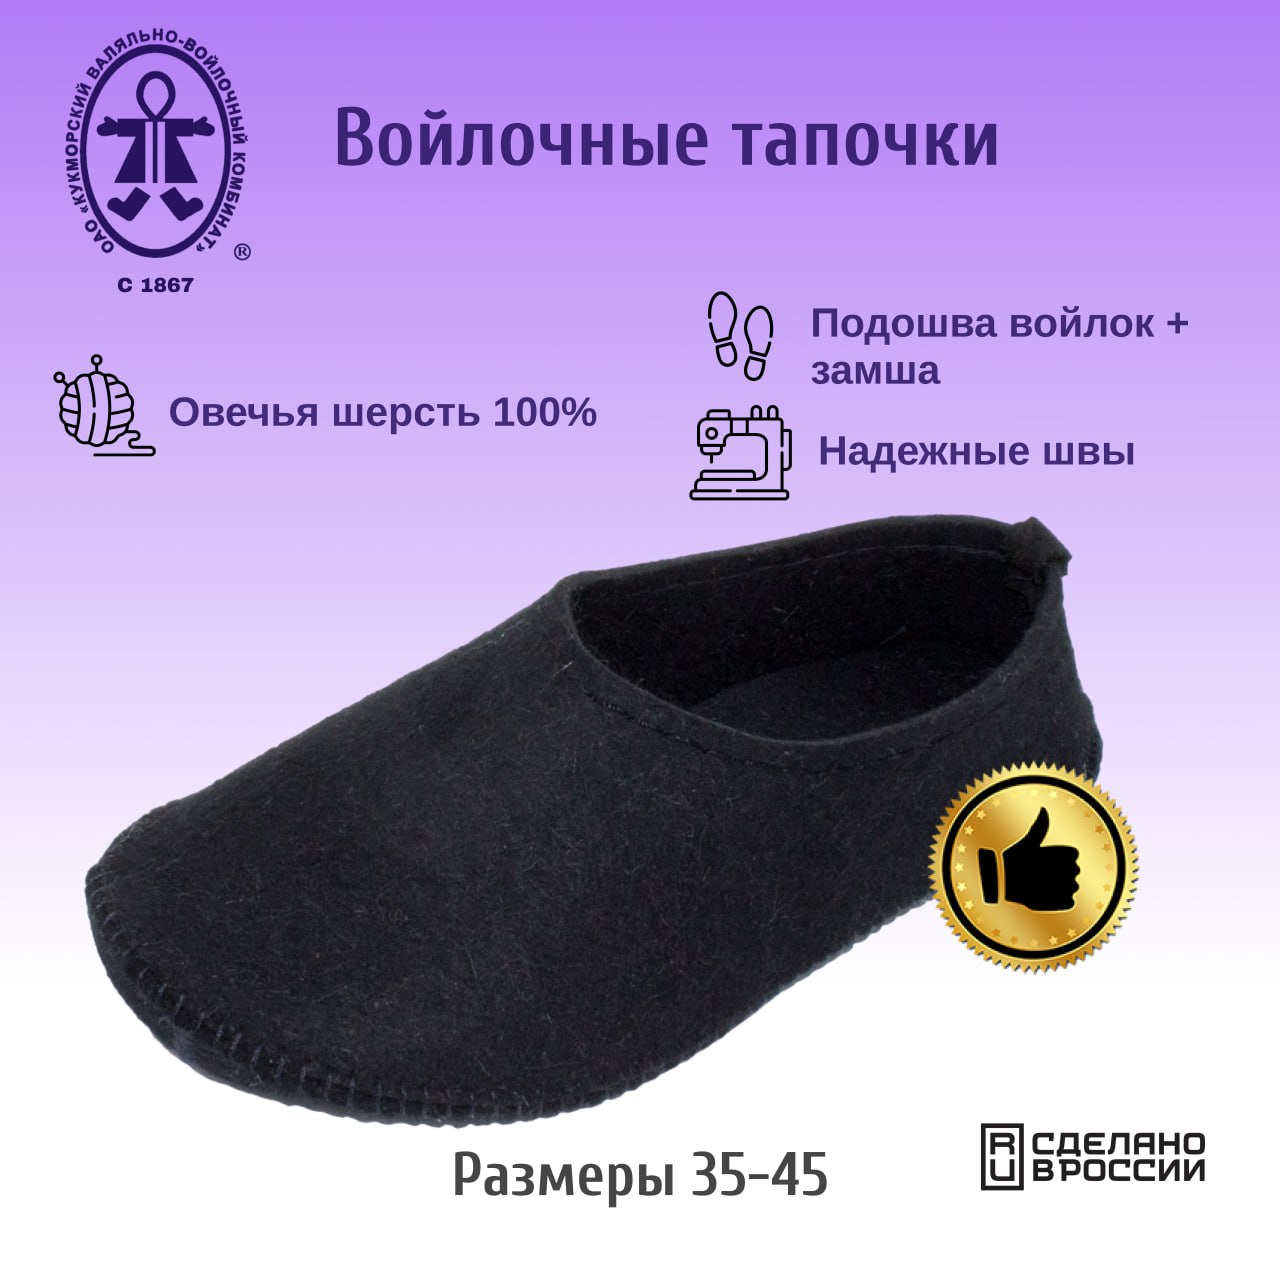 Тапочки Кукморские валенки Т-34-3094 черный, 39